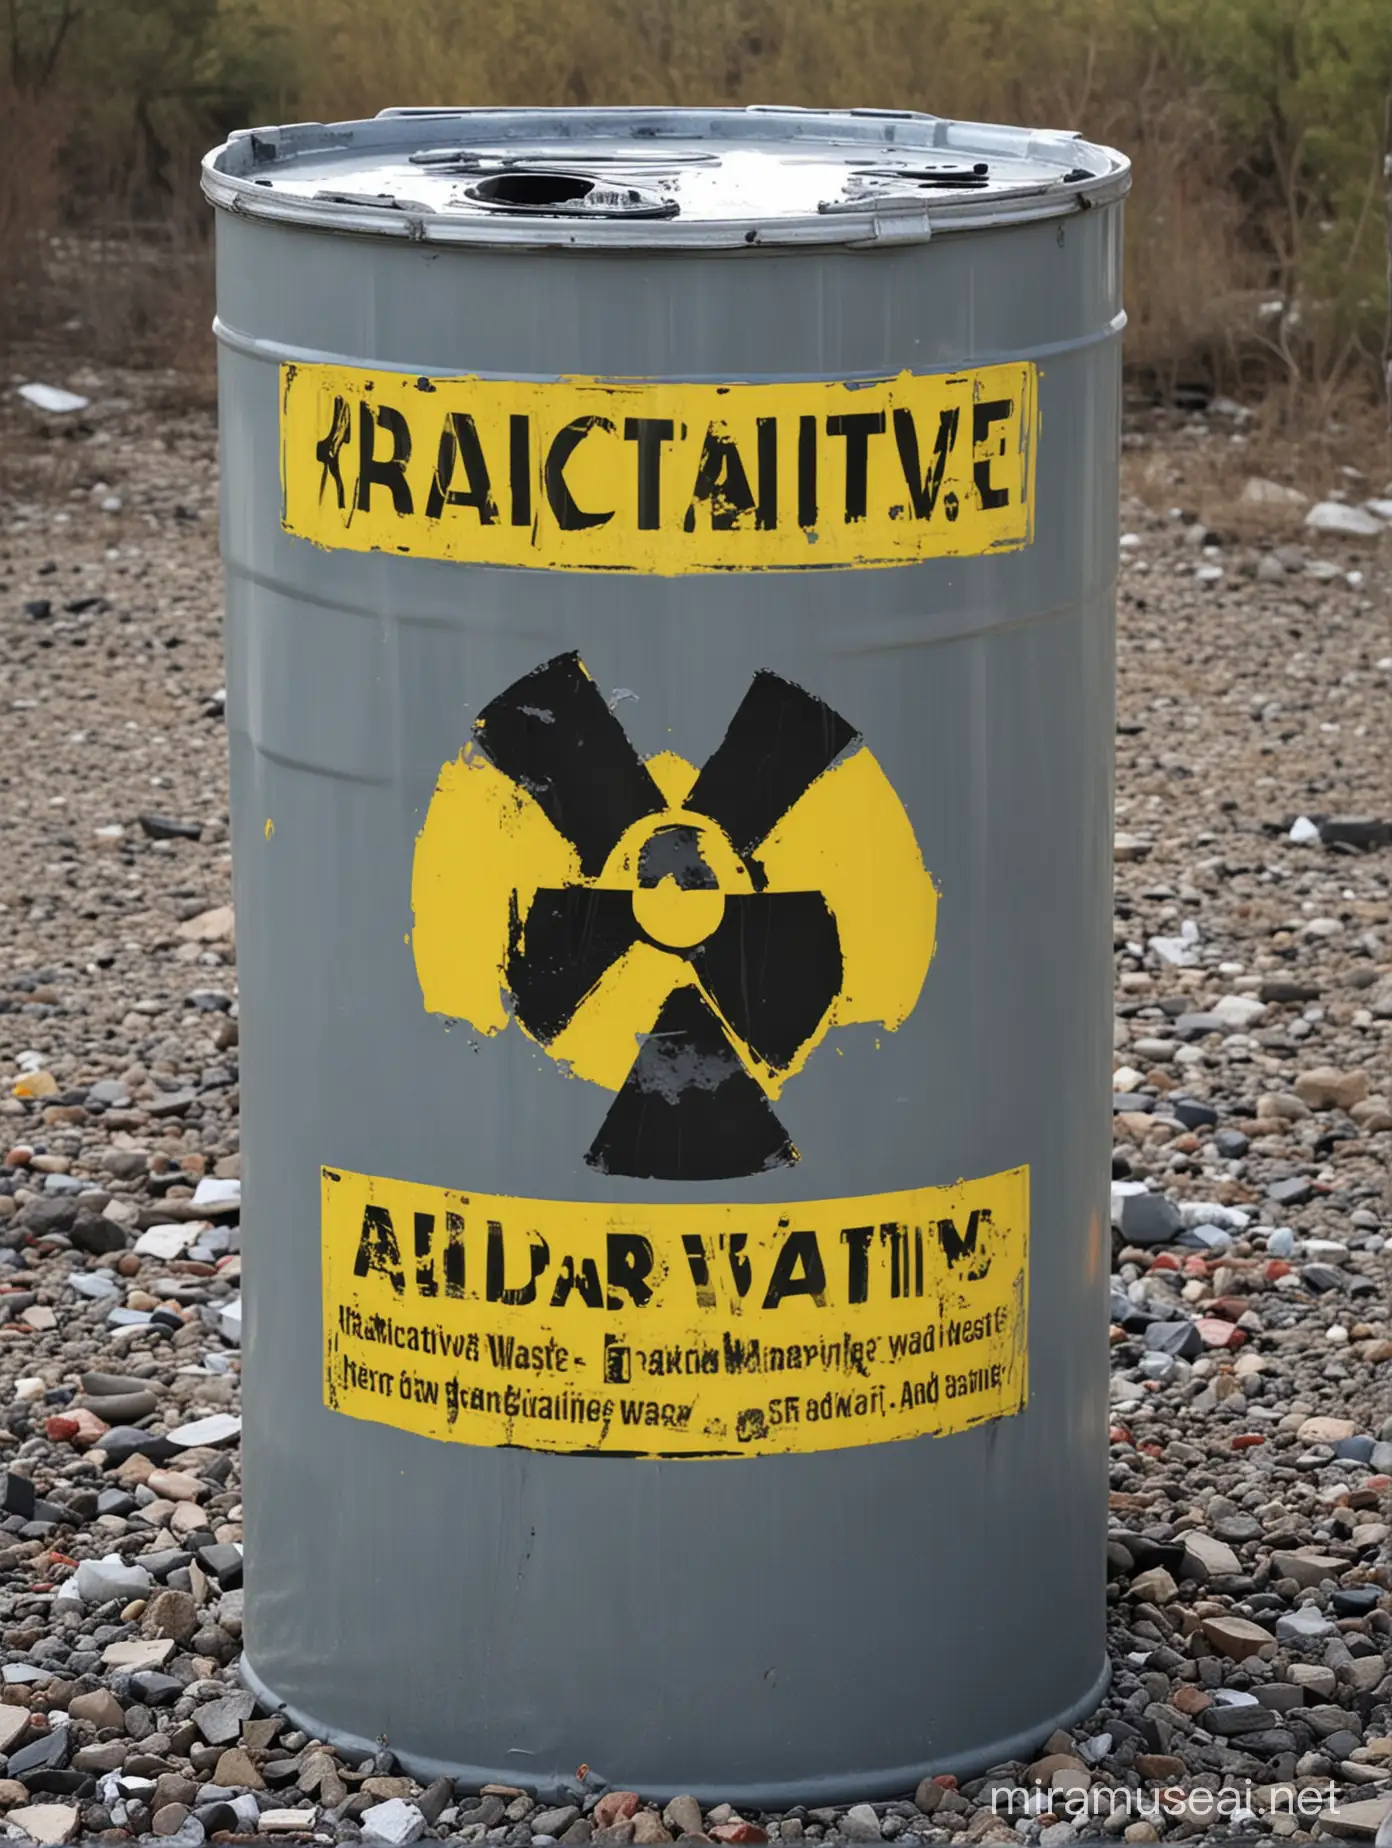 Radioactive Waste Management Facility